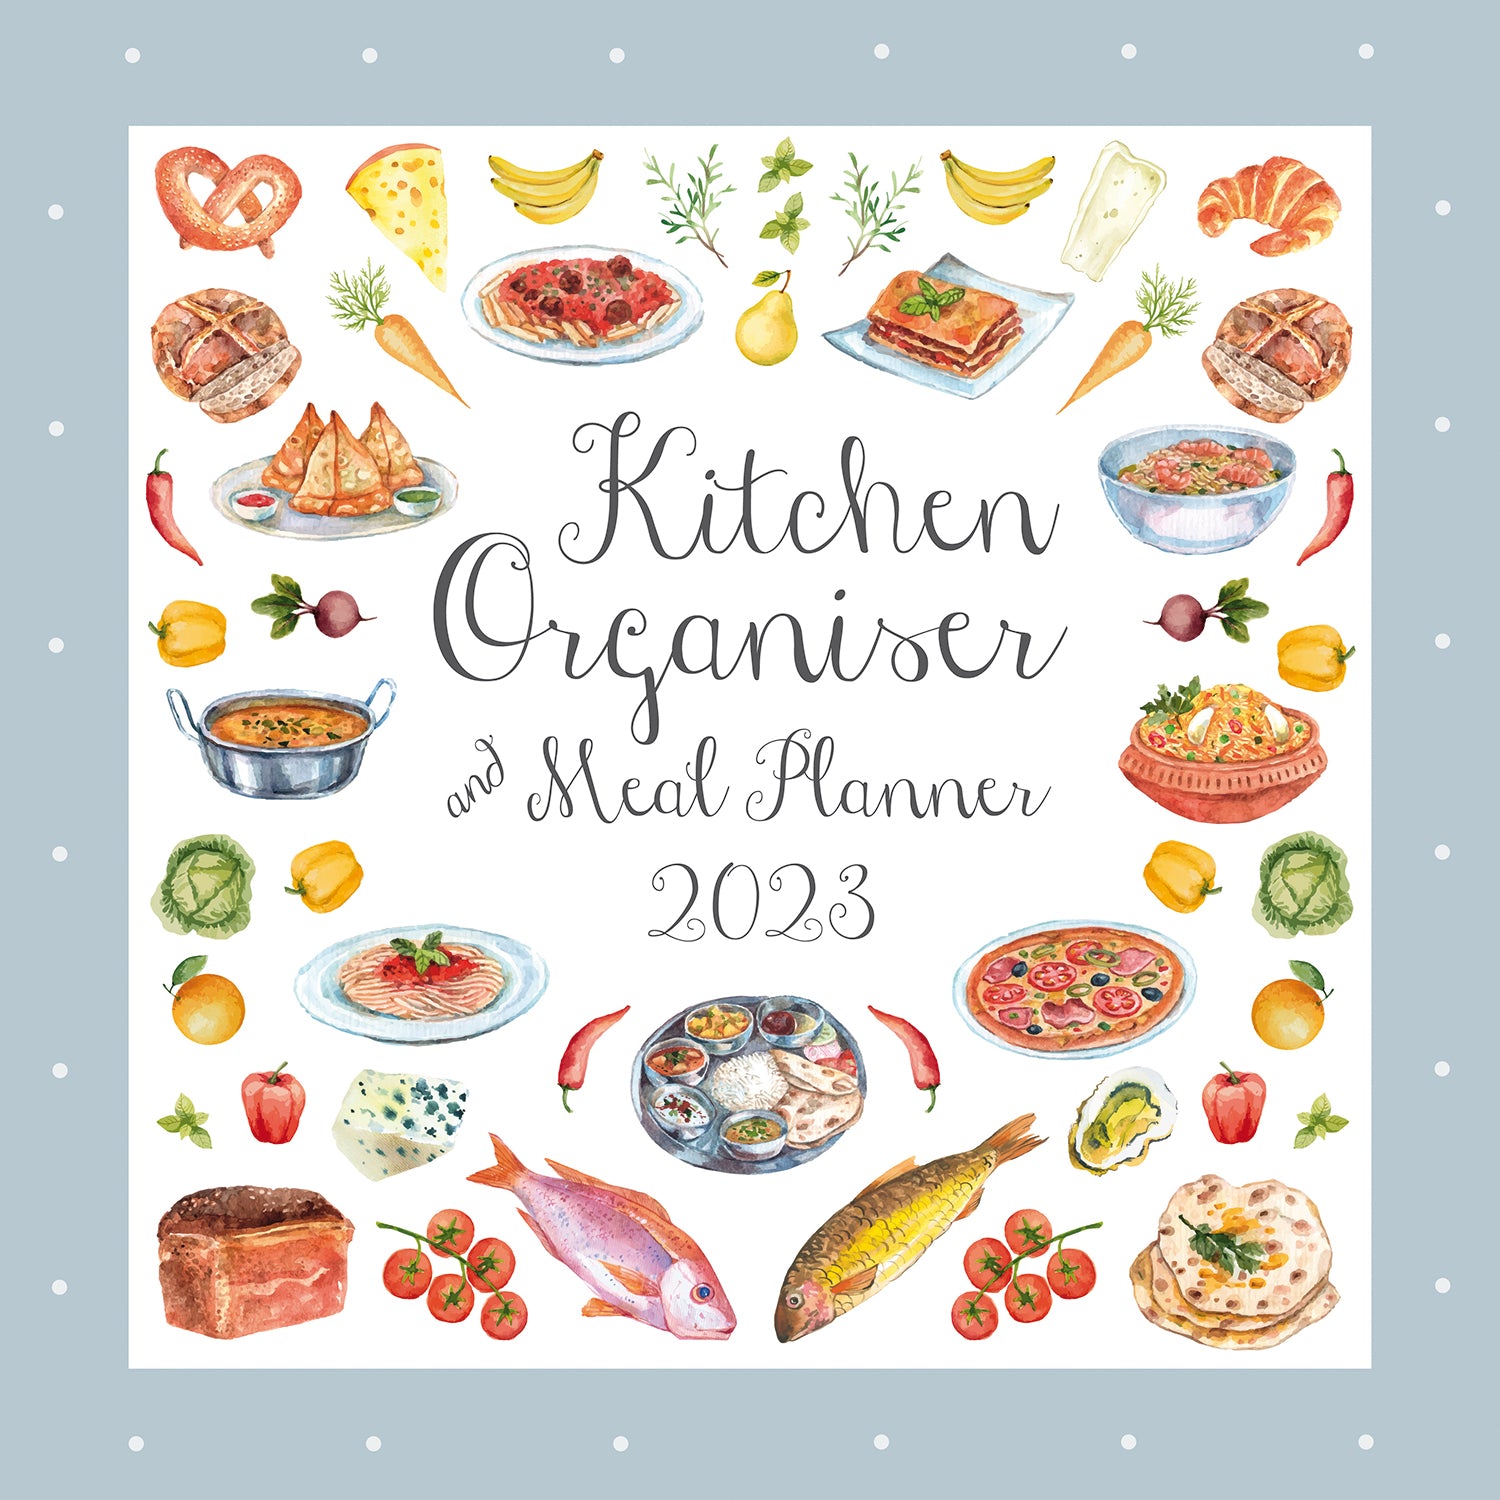 Kitchen Organiser & Meal Planner 2023 Square Wall Calendar 16 Month Planner Gift - Zmart Australia